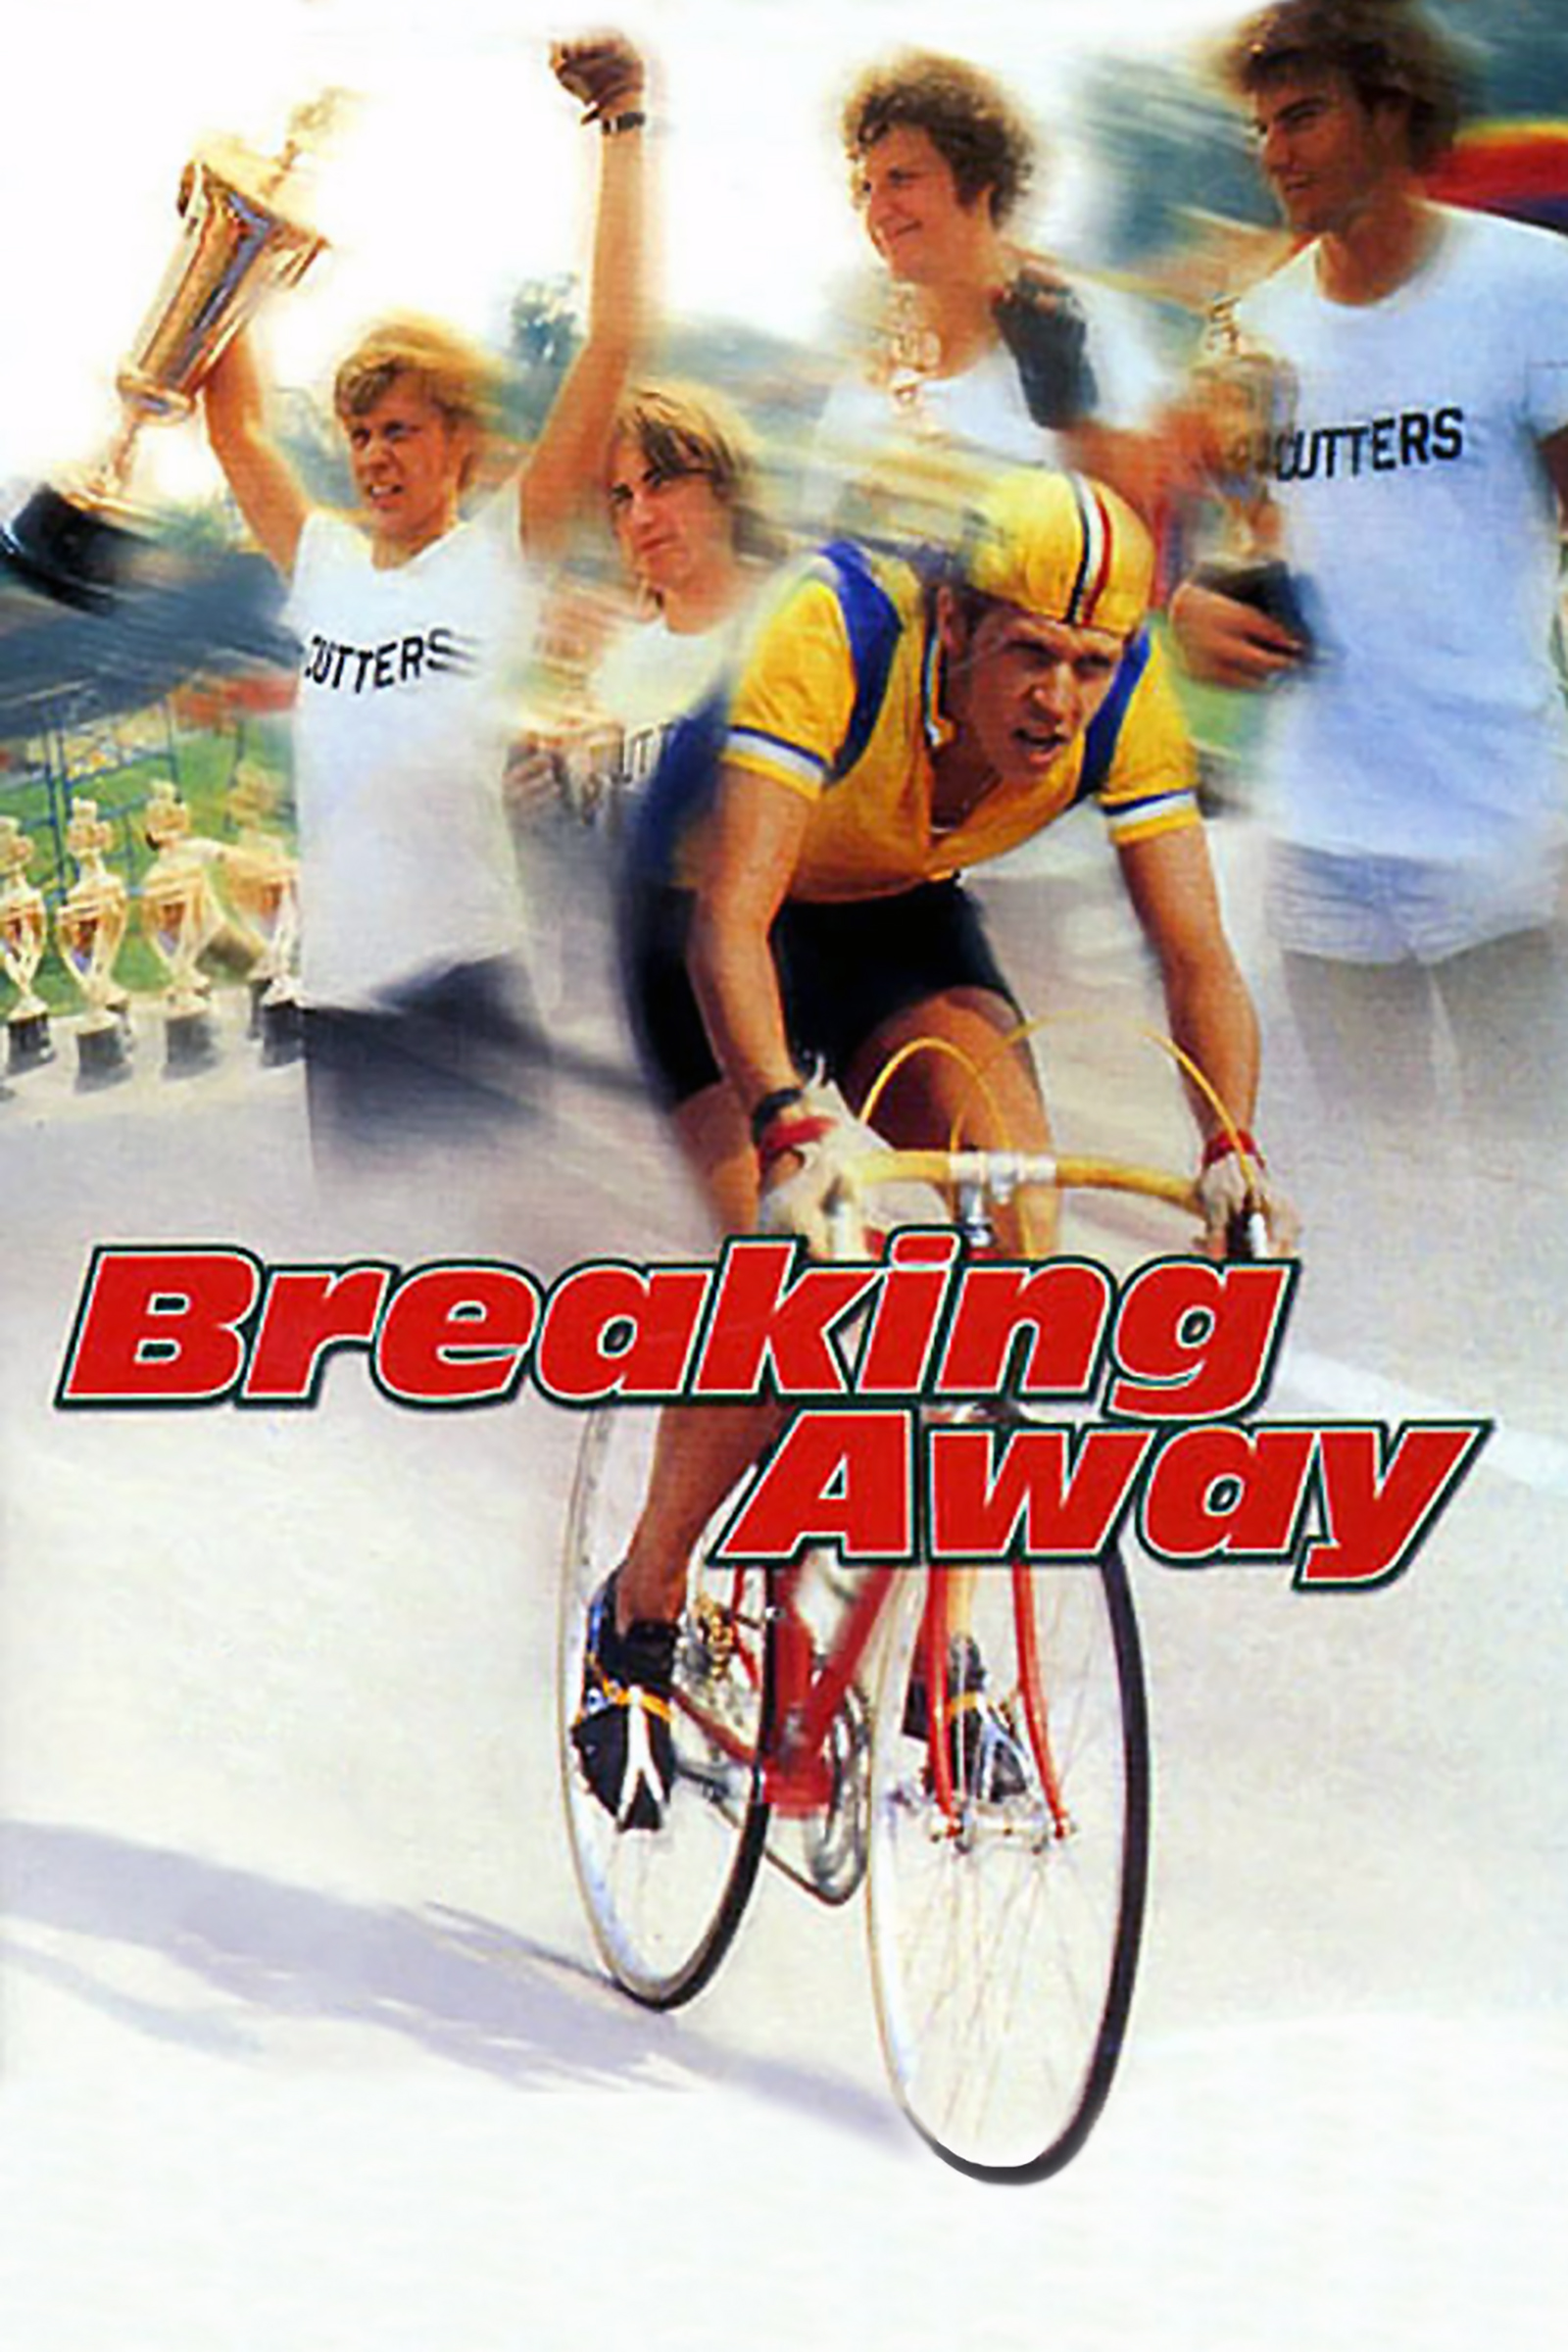 http://www.ebykr.com/wp-content/uploads/2005/12/ebykr-breaking-away-movie-poster.jpg